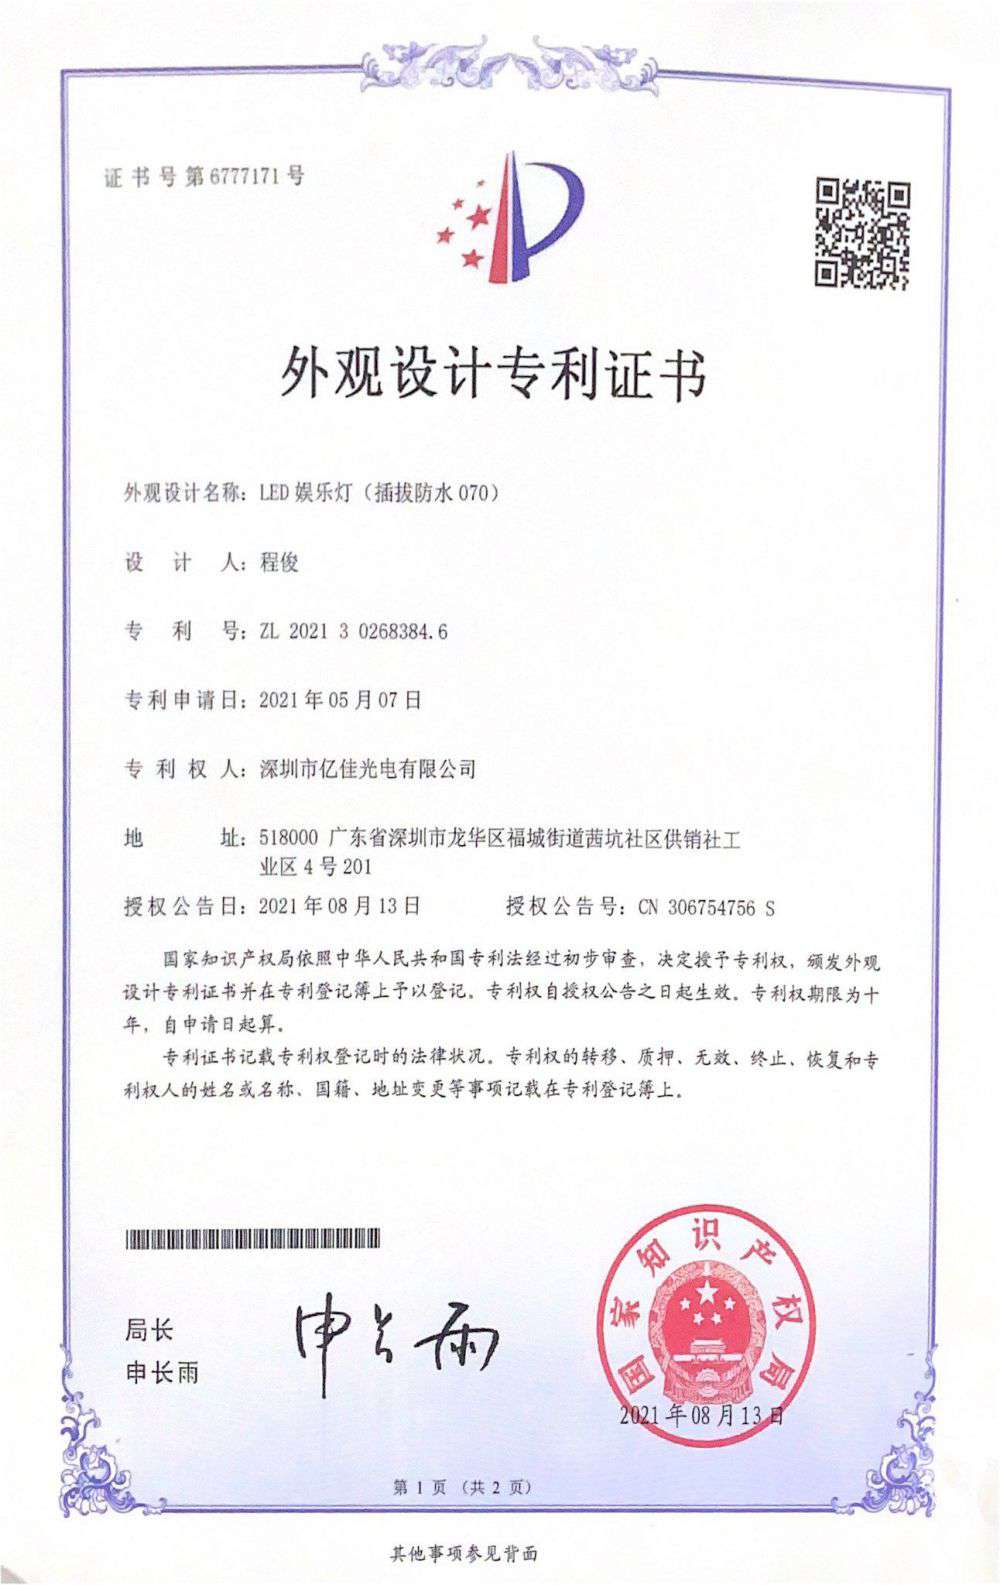 深圳市海博论坛光电有限公司LED娱乐灯070获得外观设计专利证书